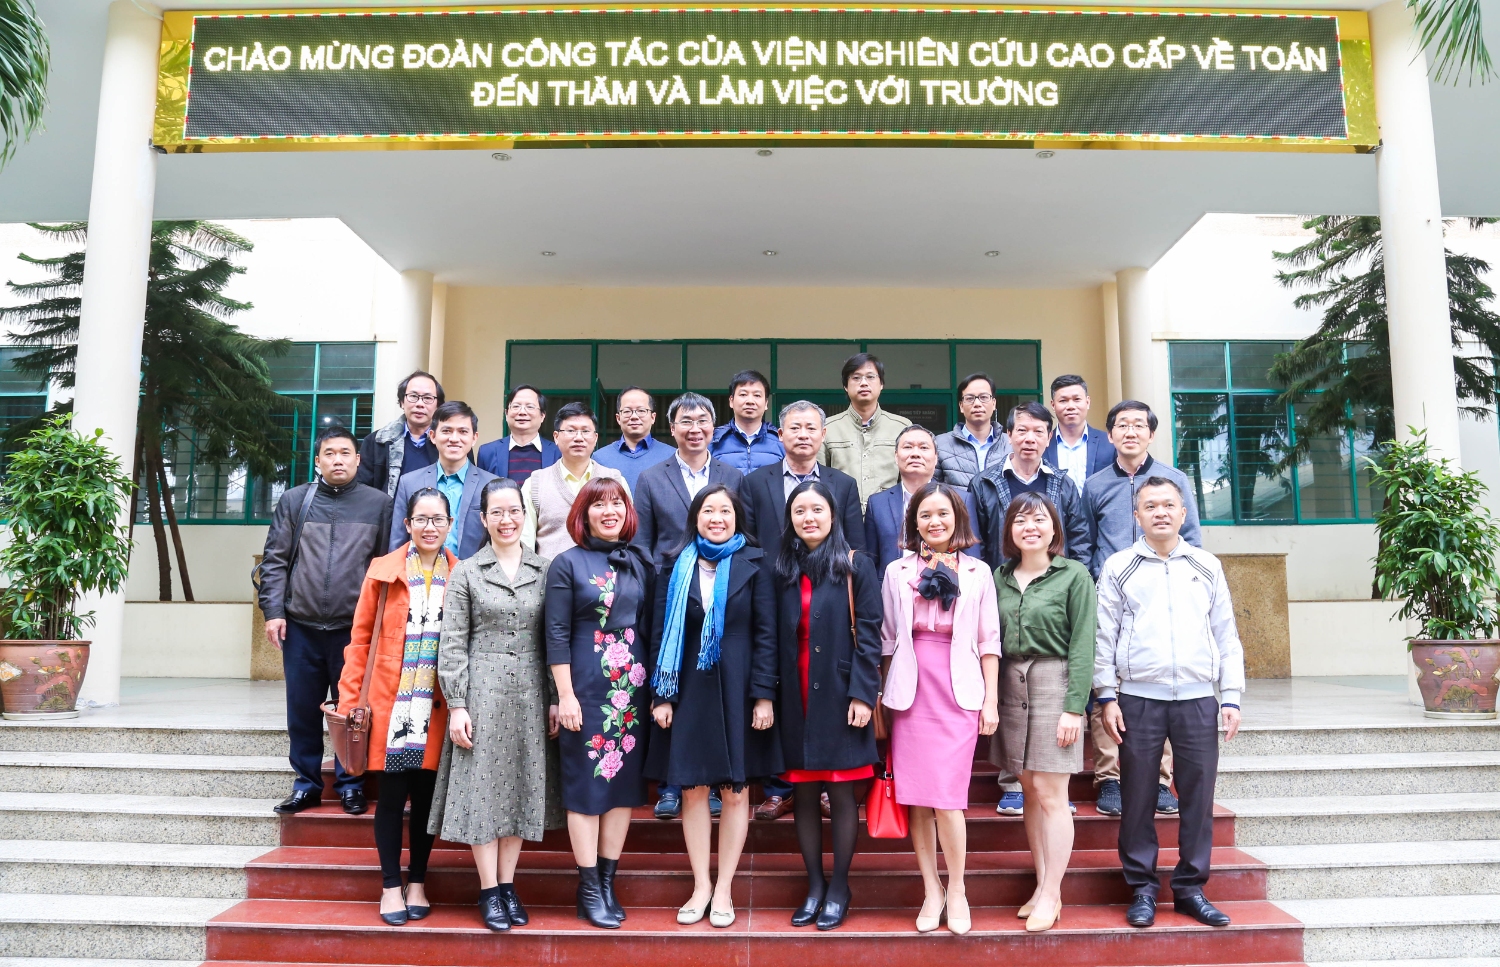 Tiếp đón và trao đổi với Viện Nghiên cứu cao cấp về Toán cho Chương trình TĐQG phát triển Toán học khu vực miền Trung